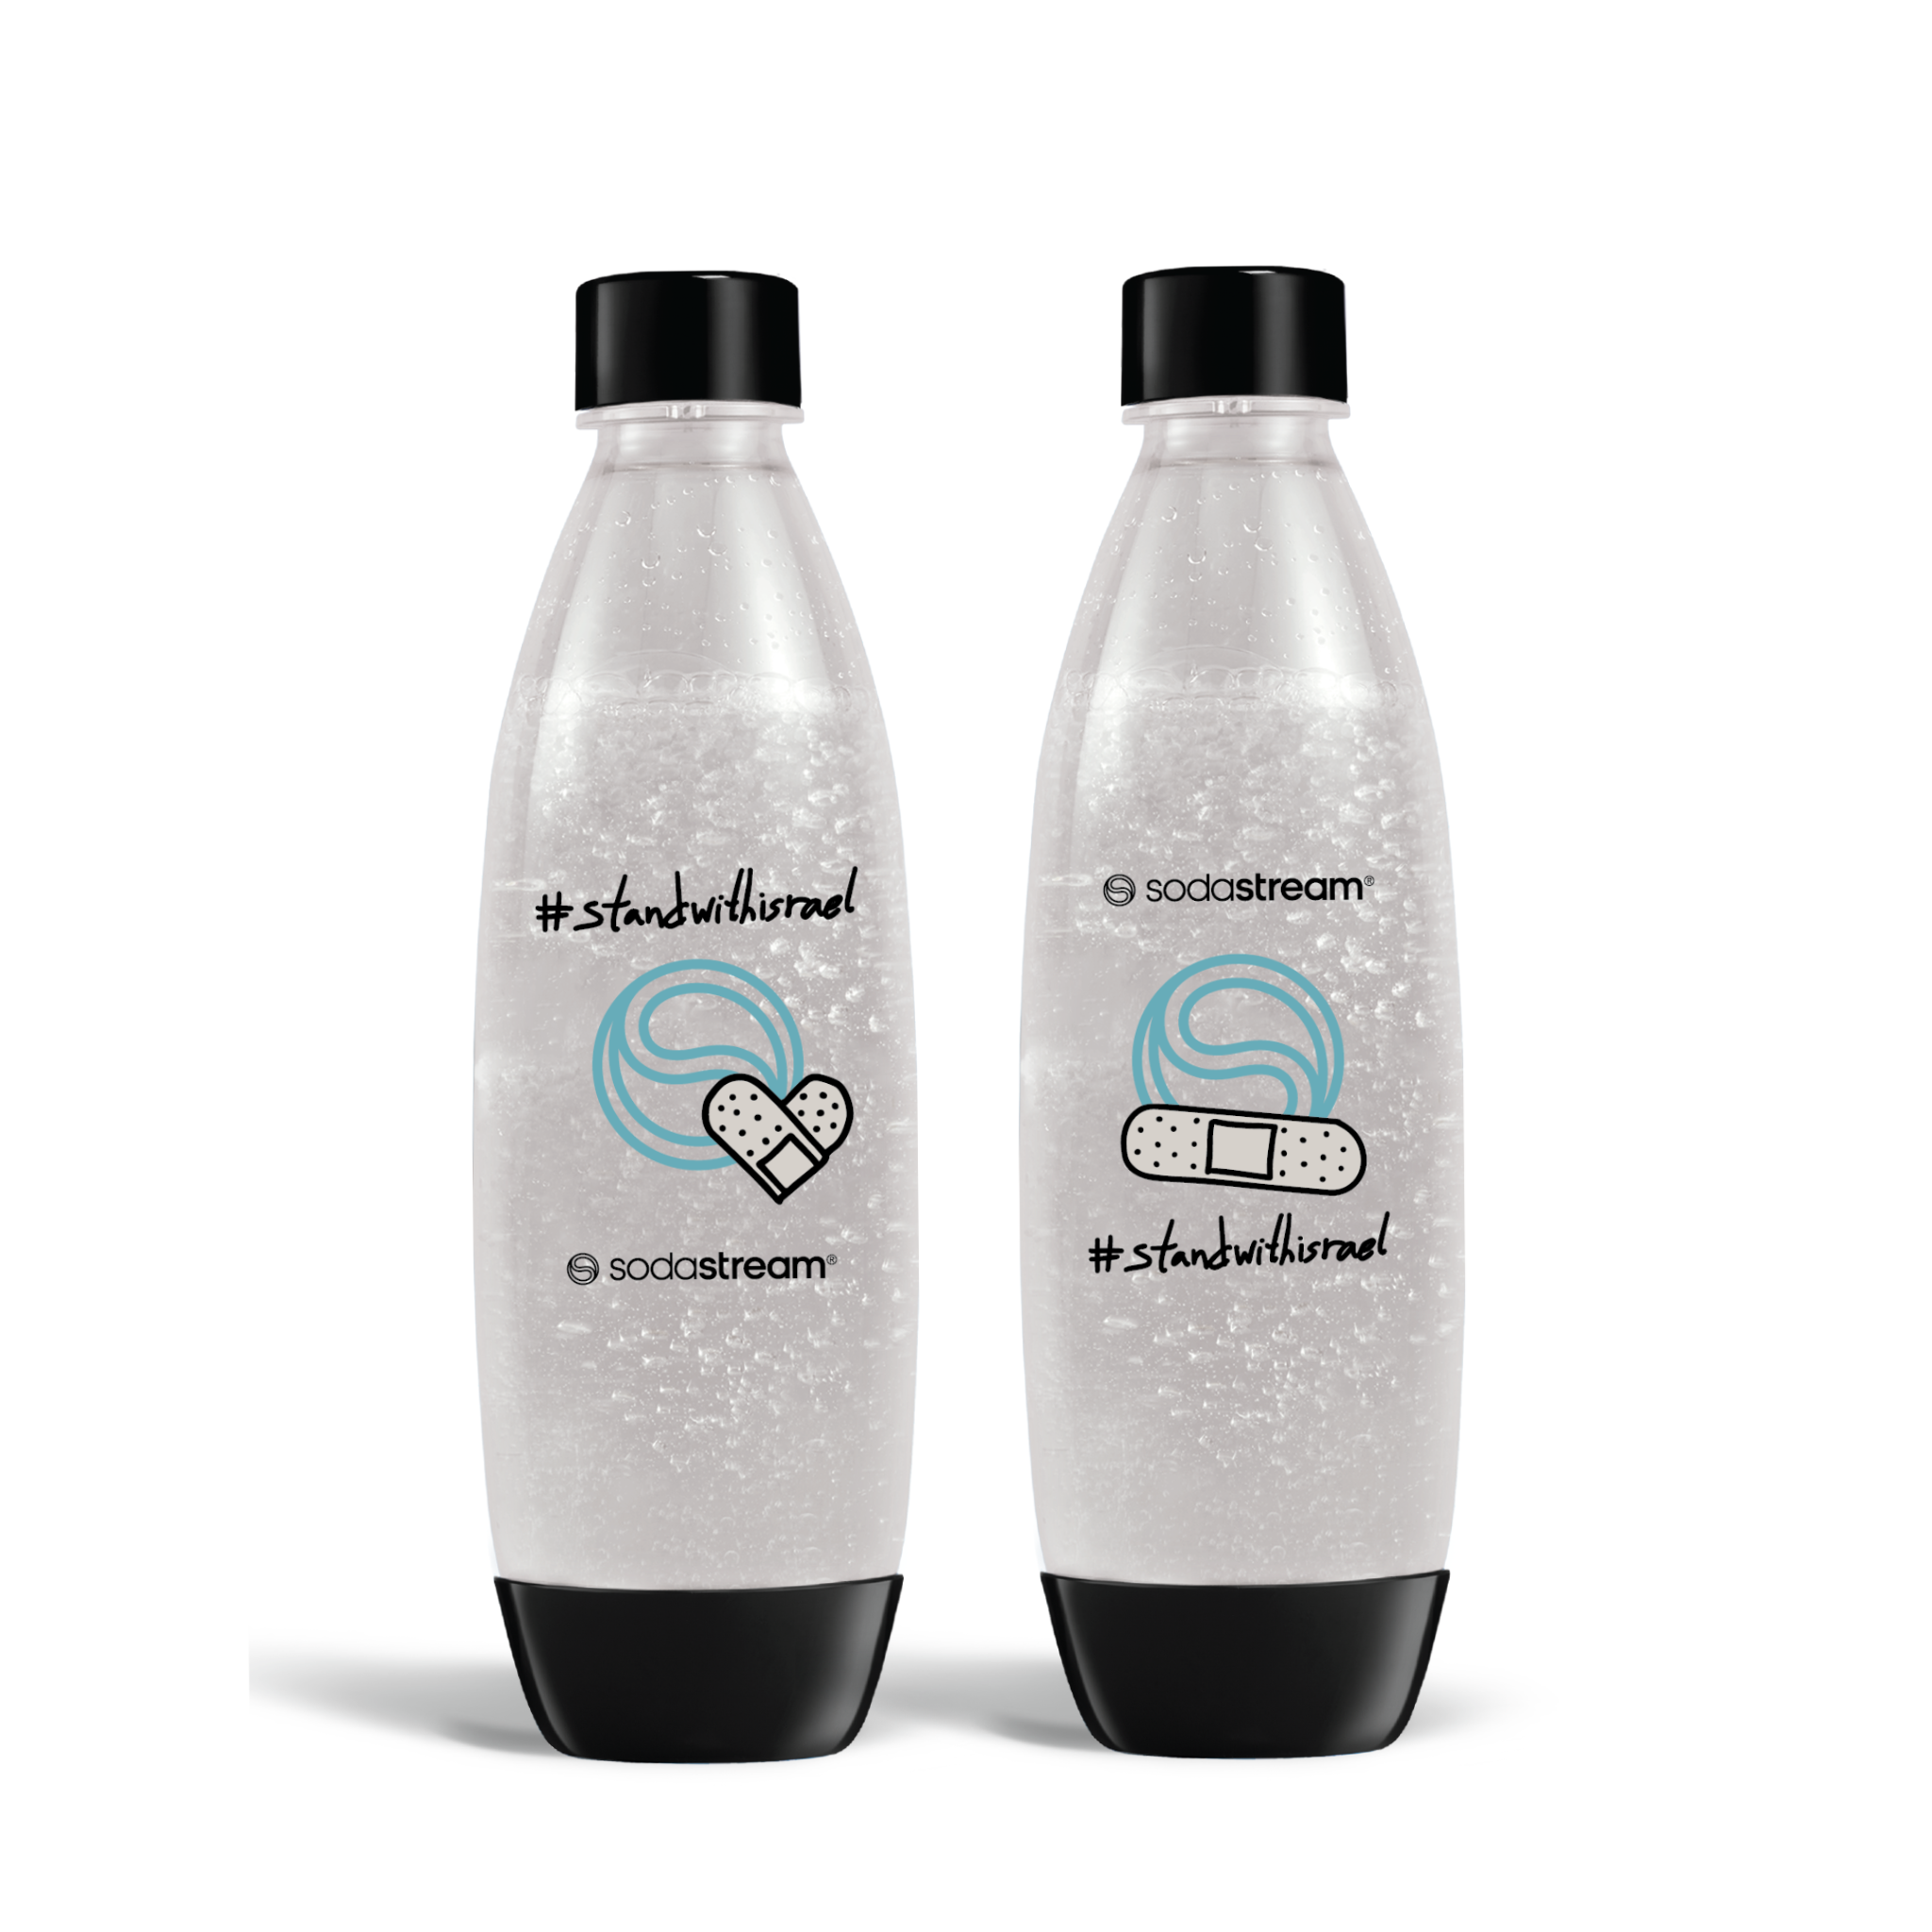 זוג בקבוקי פלסטיק מעוצבים בשיתוף פעולה עם האמן Dede להעלאת המודעות לנפגעי טראומה על רקע לאומי